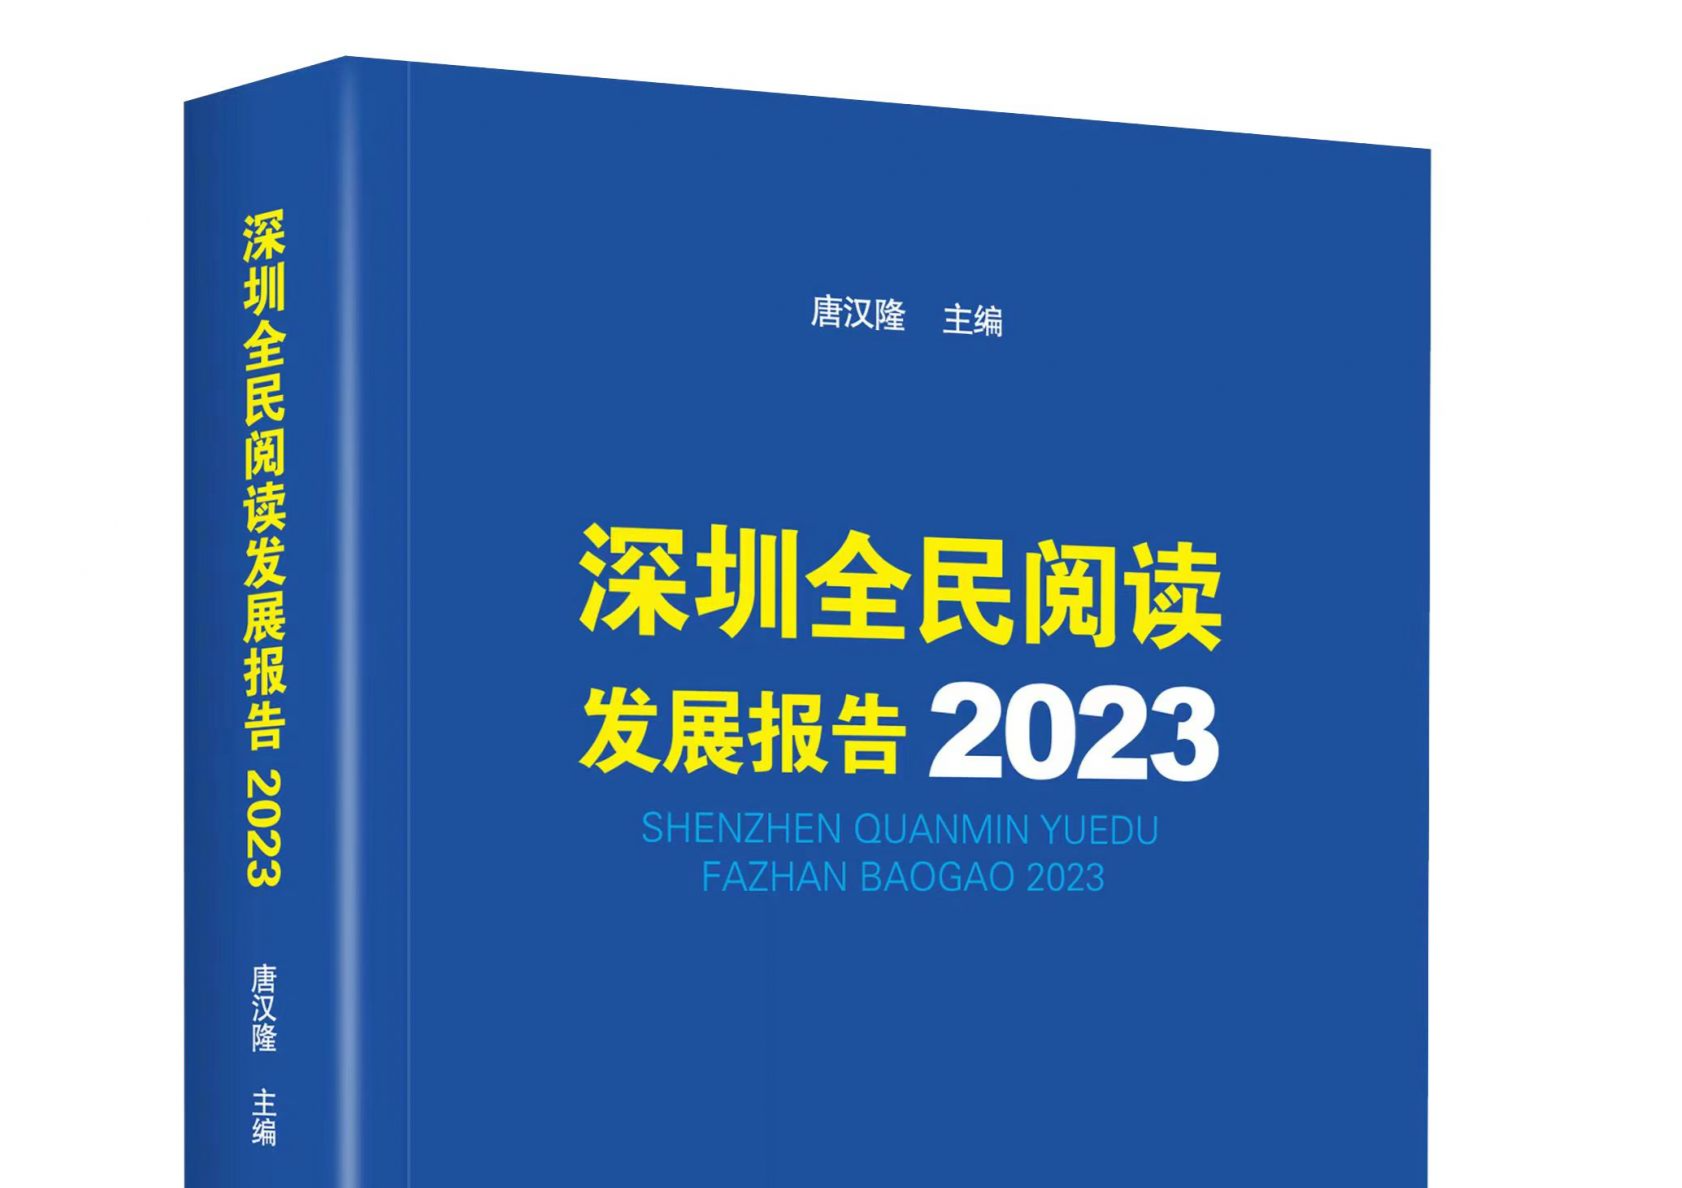 2022年深圳居民人均阅读量约18本，《深圳全民阅读发展报告2023》发布